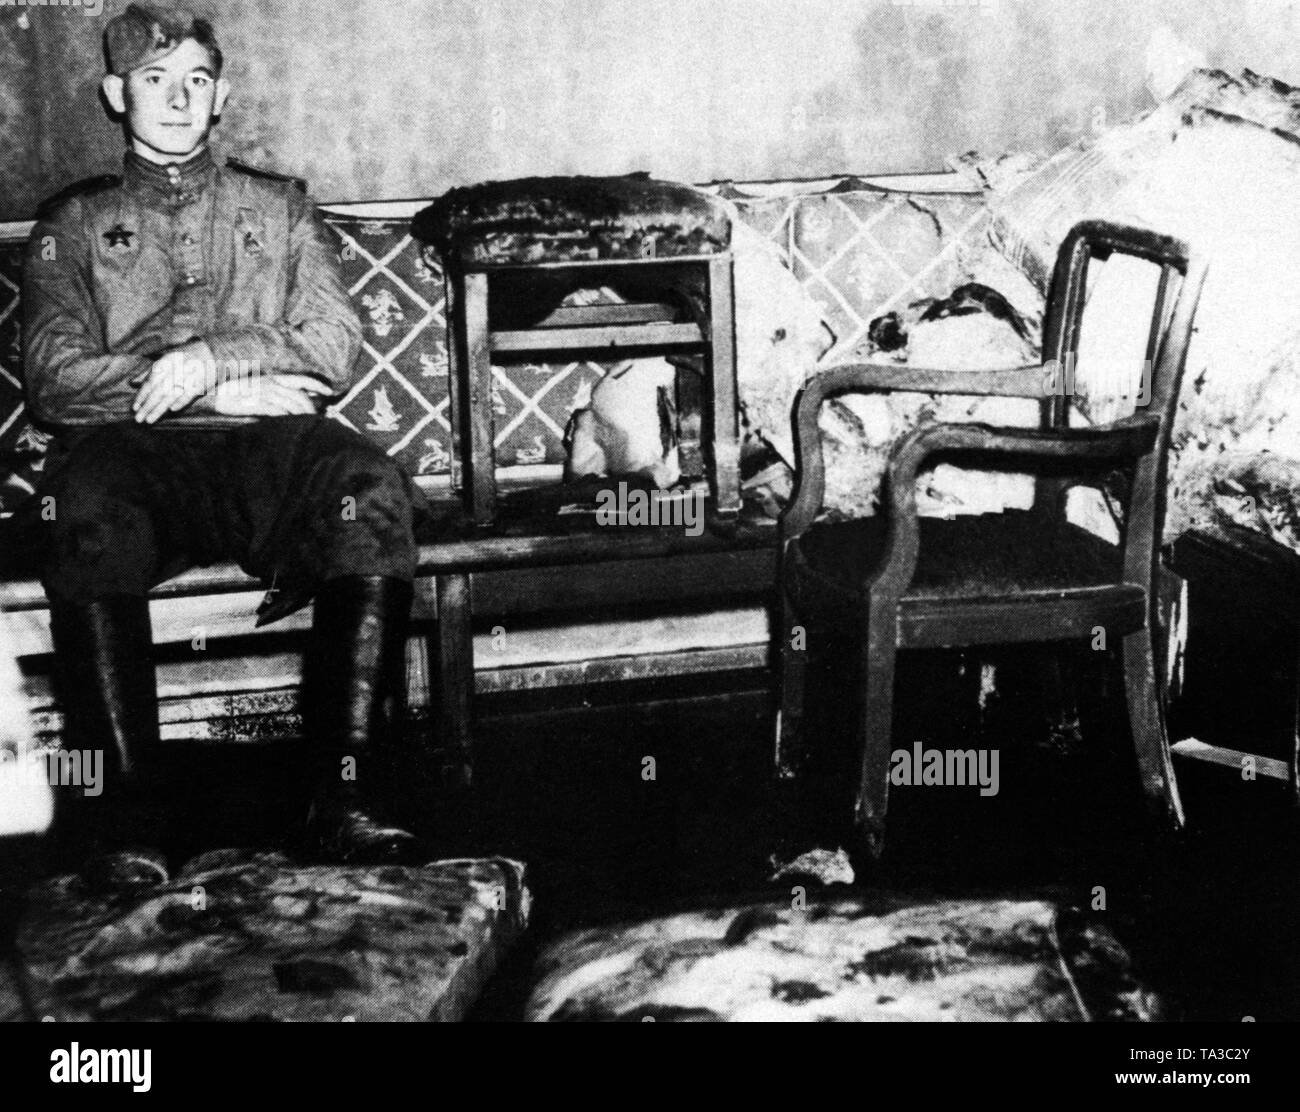 Foto von einem sowjetischen Soldaten durch einen amerikanischen im Fuehrerbunker', kurz nach der Übernahme der Reichskanzlei von sowjetischen Truppen eingenommen. Der Soldat trägt die Reihenfolge der Red Star (militärische Dekoration) auf seinem rechten Brust, und sitzt auf dem Sofa im Zimmer, wo Hitler und Eva Braun ihr Leben nahm. Stockfoto